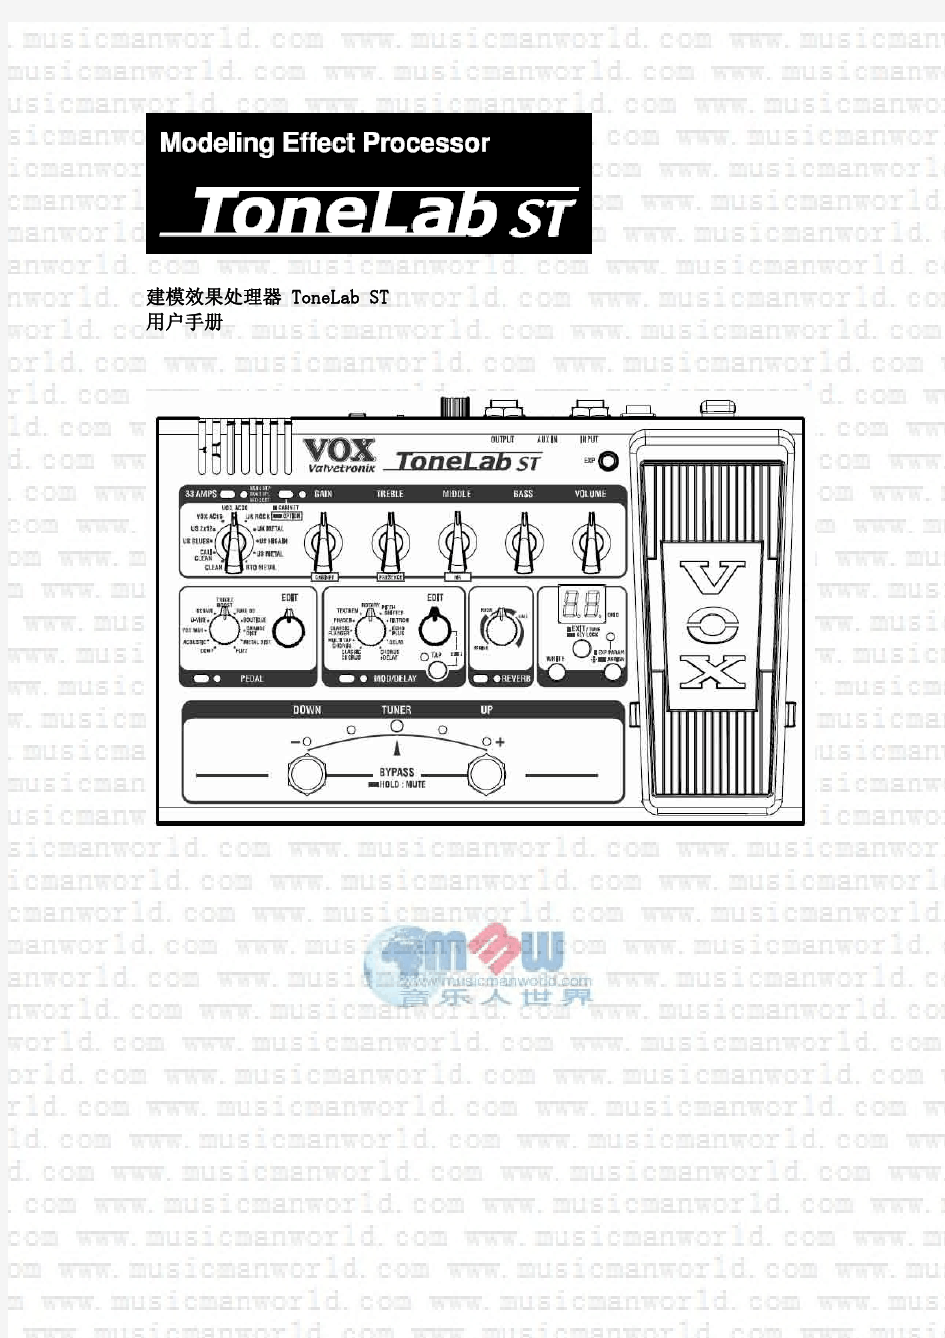 VOX ToneLab ST中文说明书